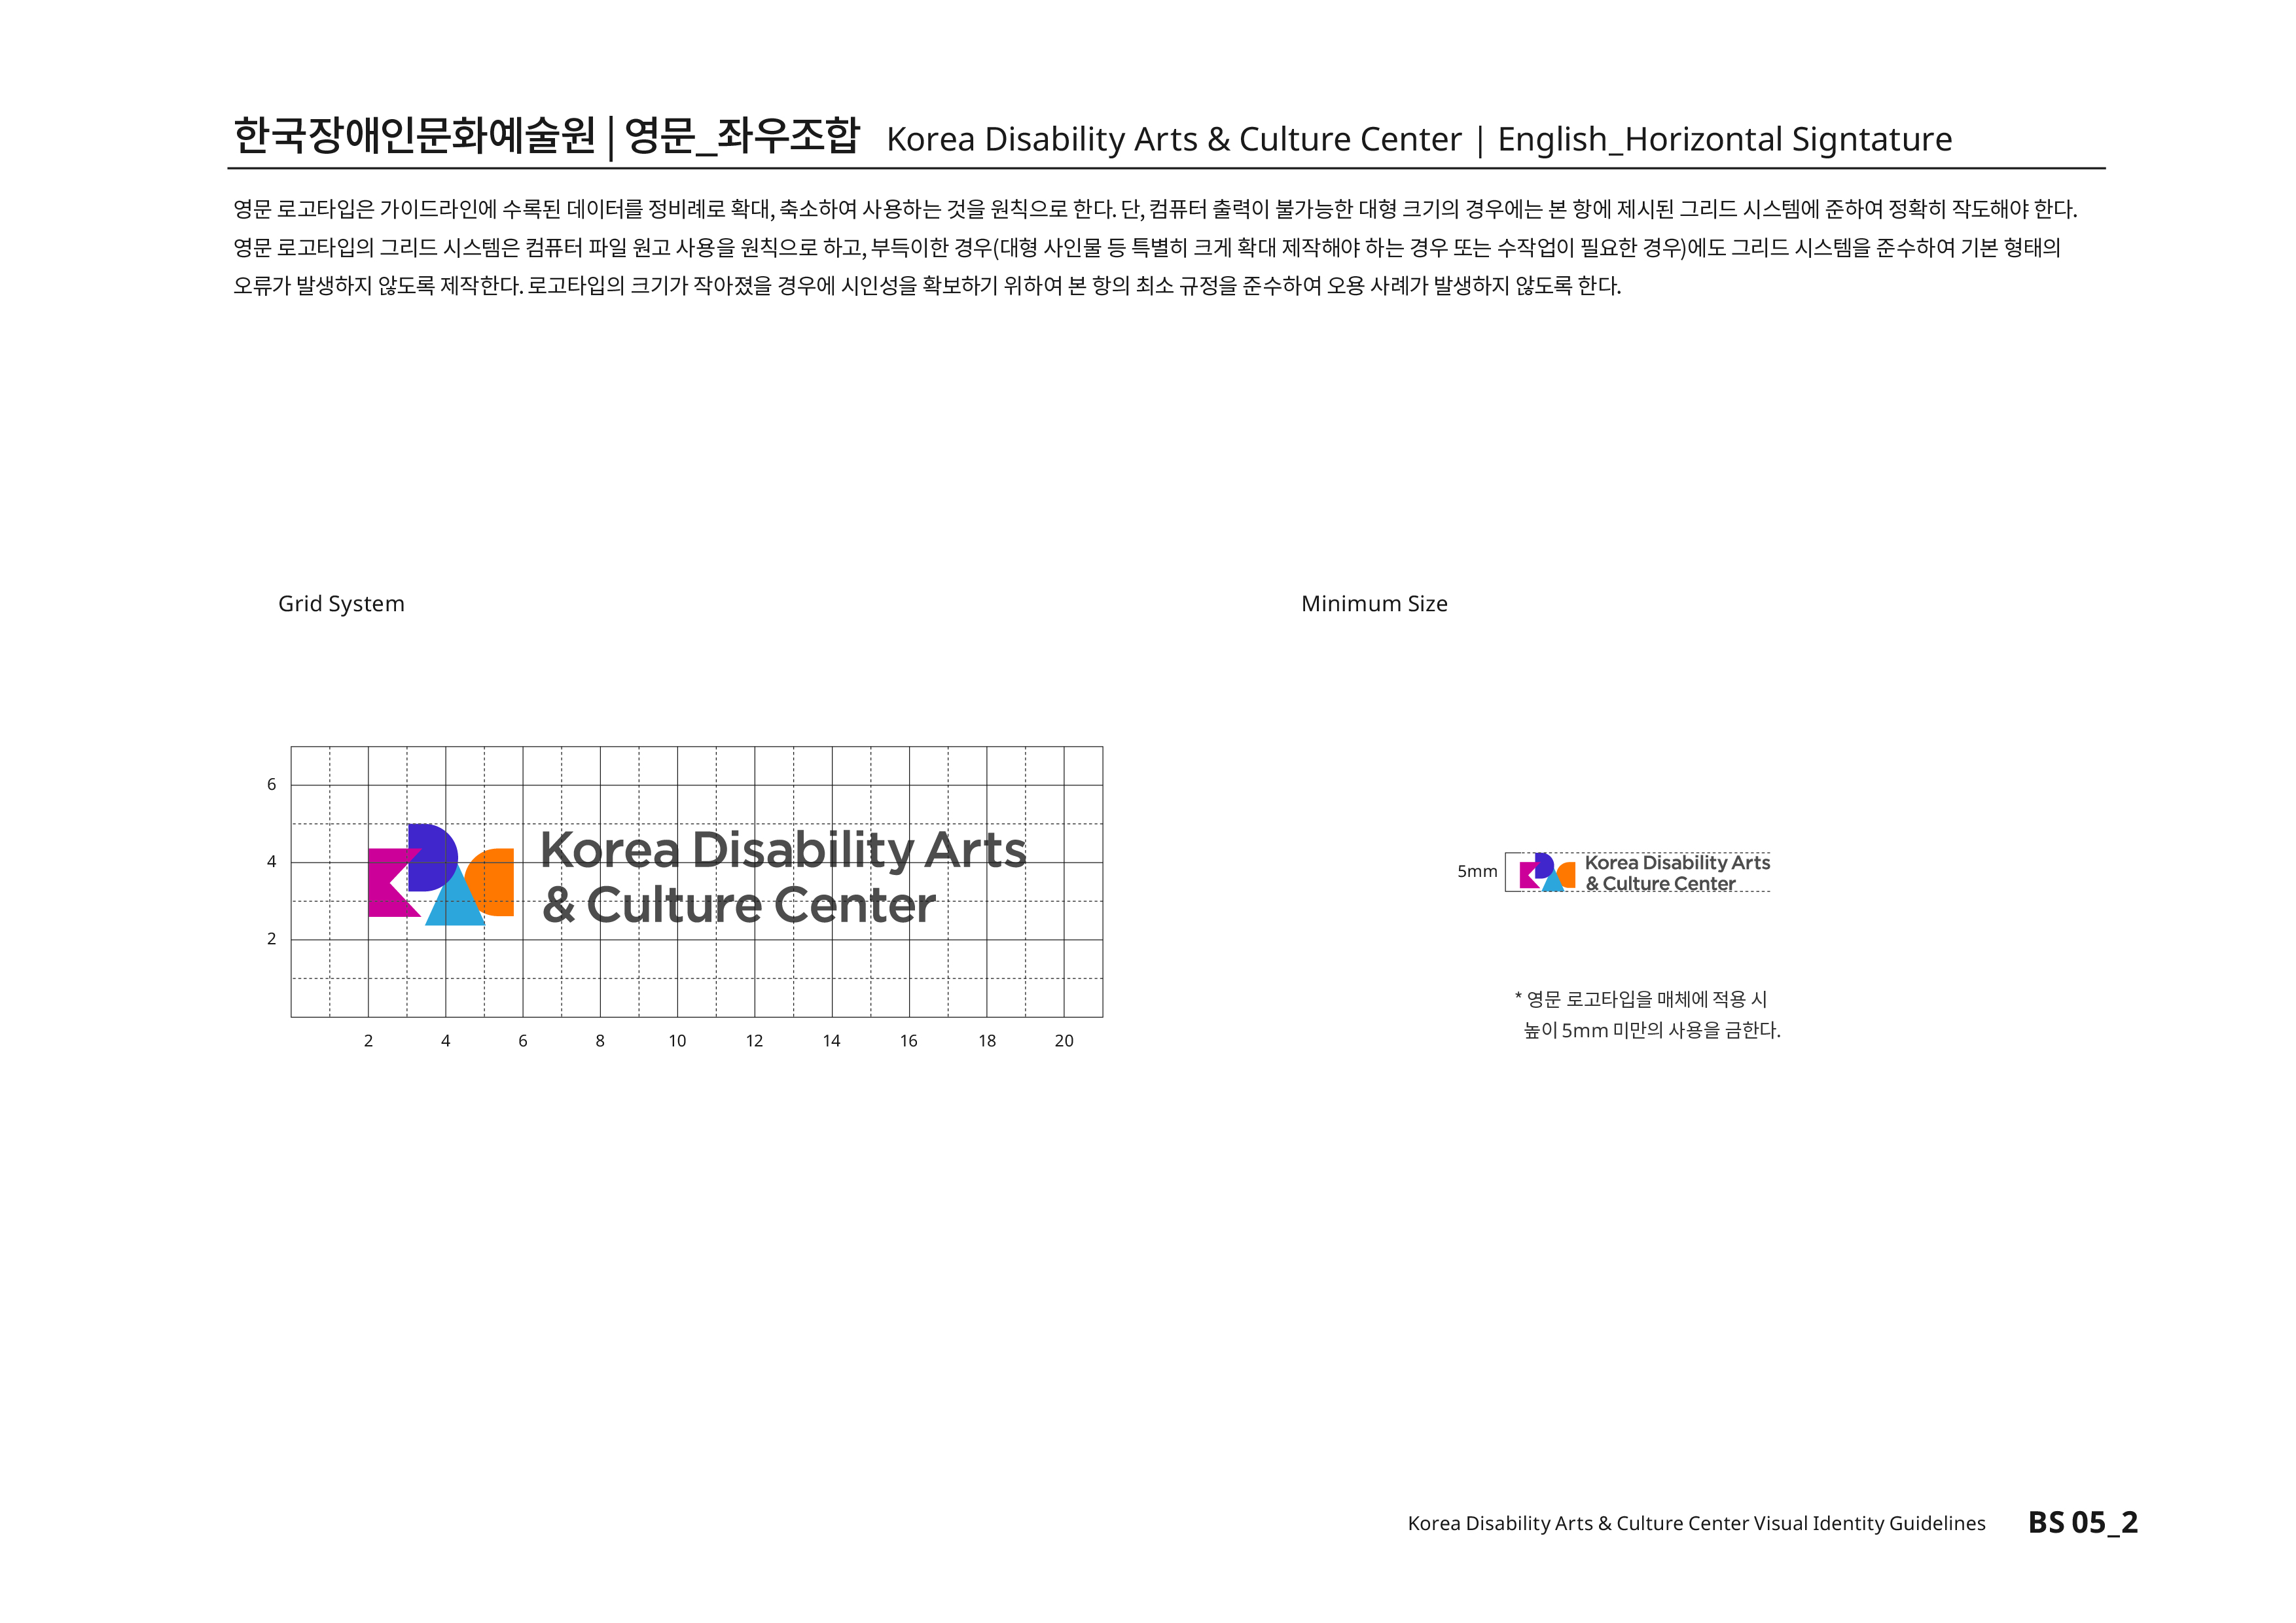 한국장애인문화예술원|영문_좌우조합 Korea Disability Arts & Culture Center | English_Horizontal Signtature 영문 로고타입은 가이드라인에 수록된 데이터를 정비례로 확대,축소하여 사용하는 것을 원칙으로 한다. 단, 컴퓨터 출력이 불가능한 대형 크기의 경우에는 본 항에 제시된 그리드 시스템에 준하여 정확히 작도해야 한다.영문 로고타입의 그리드 시스템은 컴퓨터 파일 원고 사용을 원칙으로 하고,부득이한 경우(대형 사인물 등 특별히 크게 확대 제작해야 하는 경우 또는 수작업이 필요한 경우)에도 그리드 시스템을 준수하여 기본 형태의 오류가 발생하지 않도록 제작한다.로고타입의 크기가 작아졌을 경우에 시인성을 확보하기 위하여 본 항의 최소 규정을 준수하여 오용 사례가 발생하지 않도록 한다.